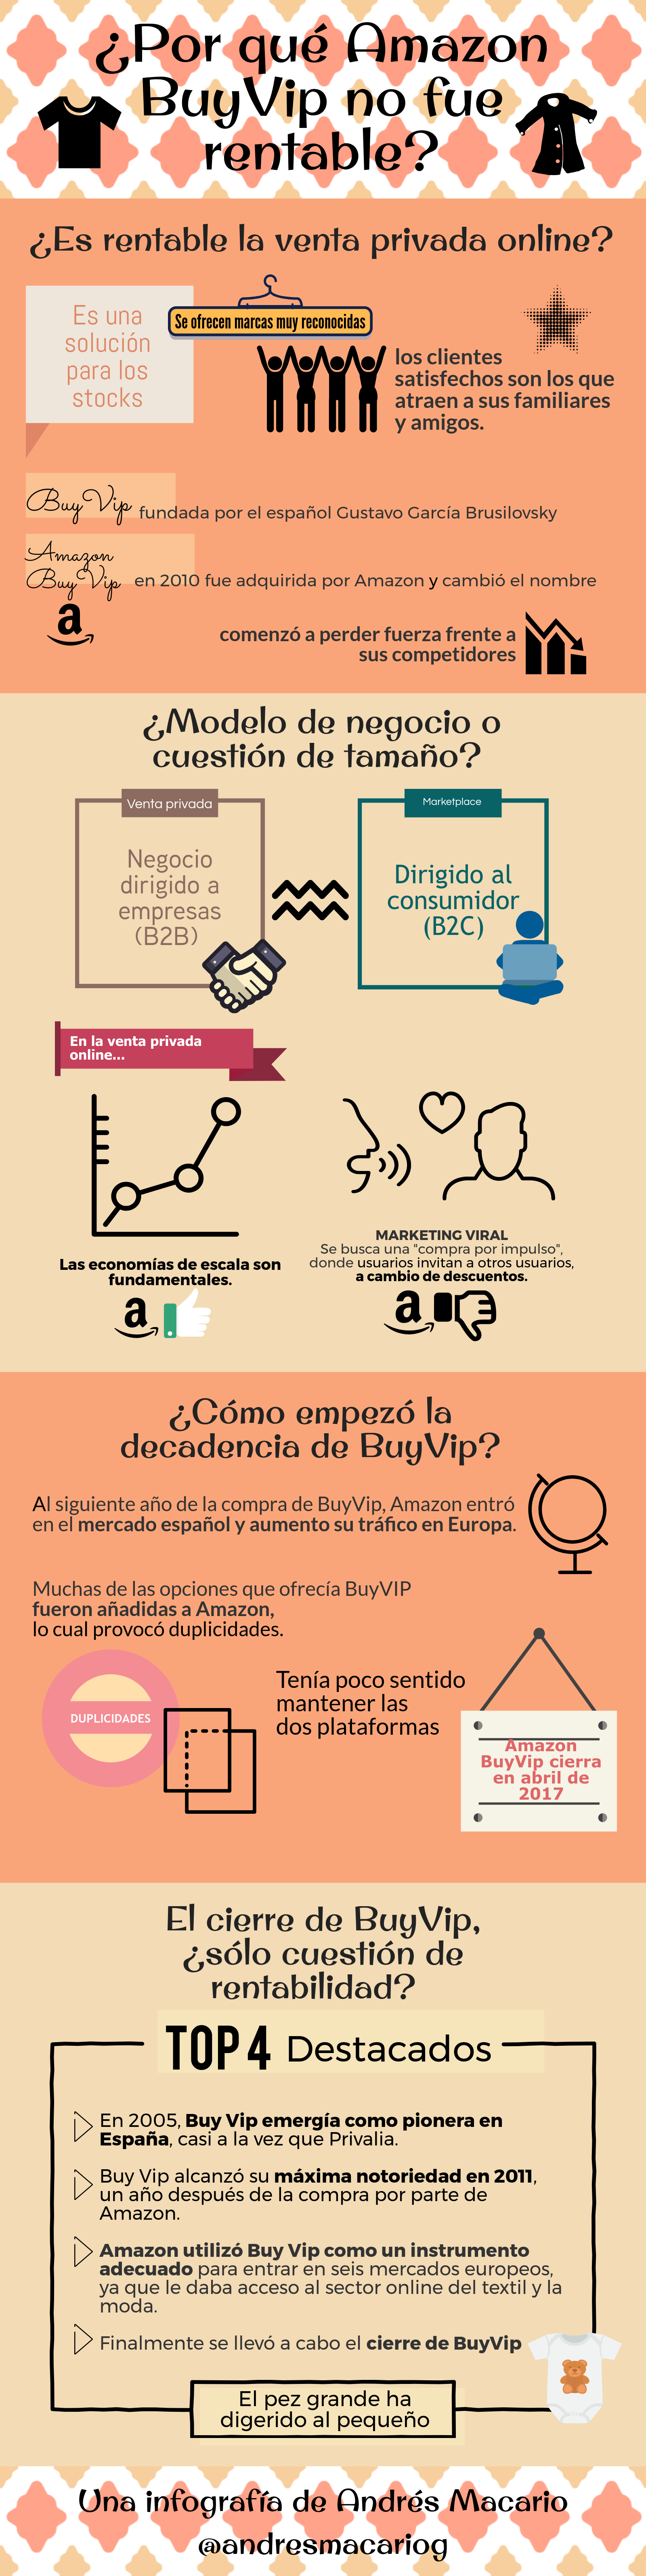 Por qué Amazon BuyVip no fue rentable - Infografía Andrés Macario